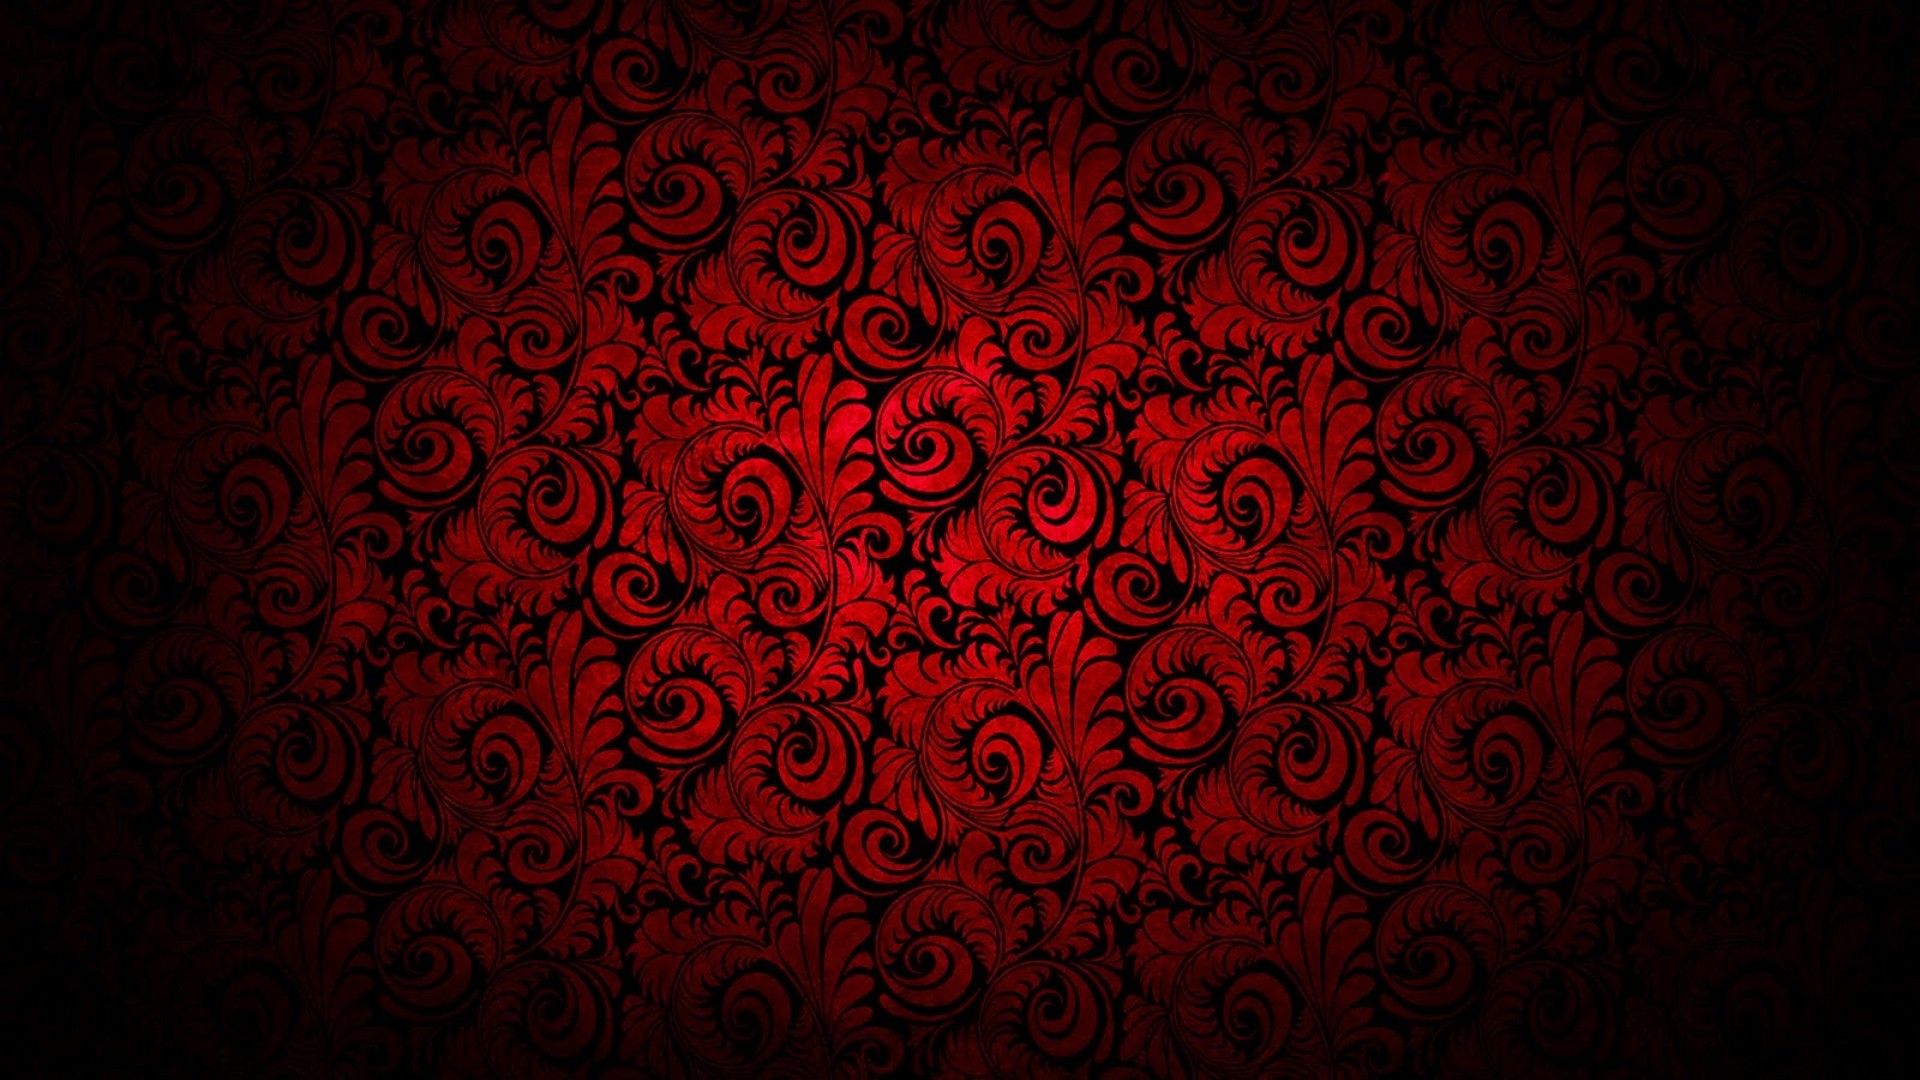 Hình nền hoa đỏ đen: Hình nền hoa đỏ đen sẽ mang đến cho bạn sự sang trọng và đẳng cấp. Với hình ảnh hoa tươi rực rỡ đậm chất đỏ trên nền đen, hình nền sẽ giúp cho thiết bị của bạn thêm phần quyến rũ và thu hút.